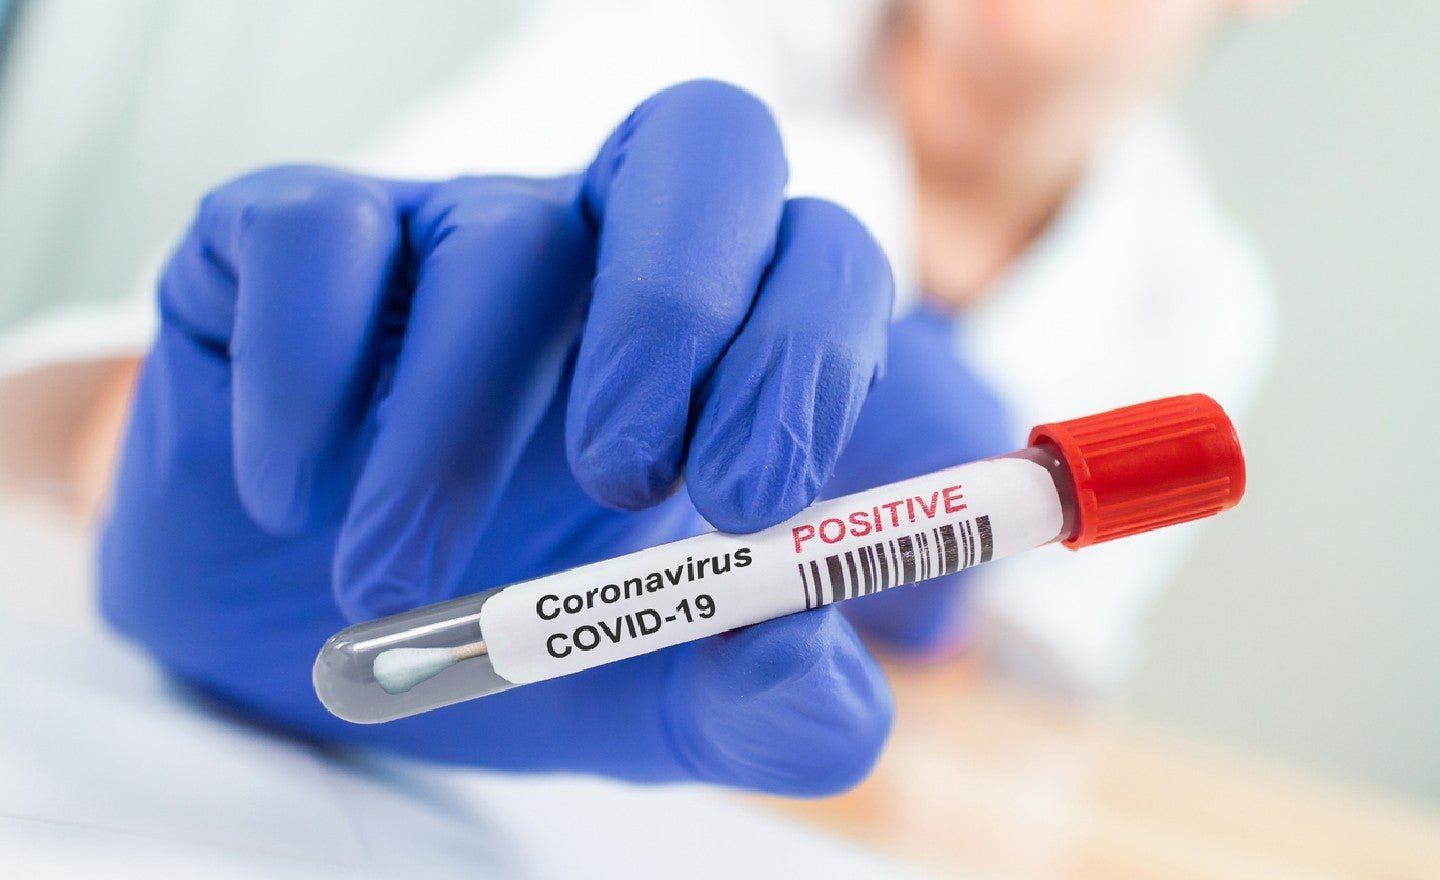  881 de decese provocate de coronavirus. 17 au fost anunțate joi